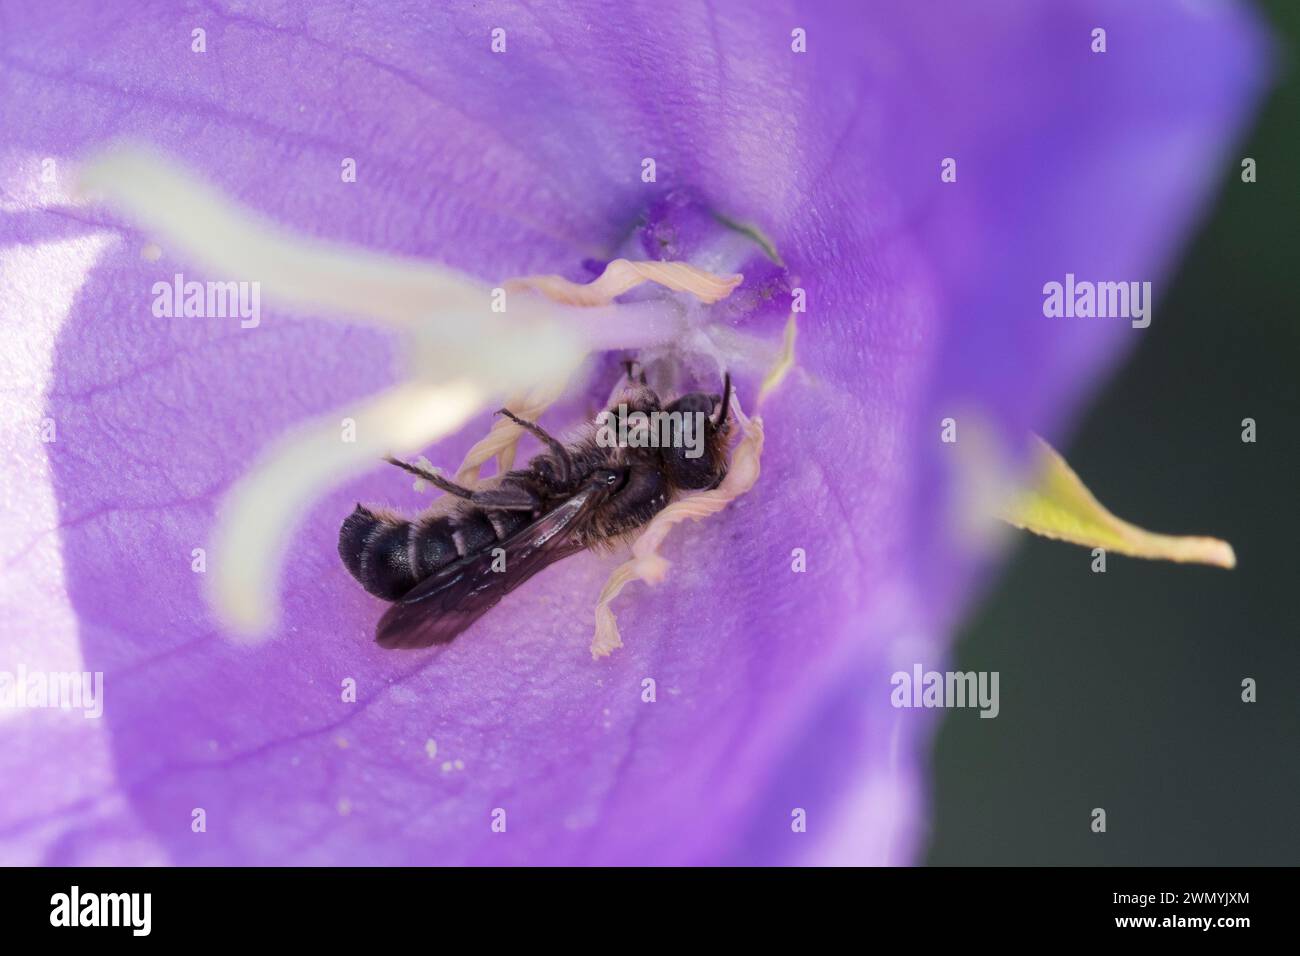 Glockenblumen-Scherenbiene, Glockenblumenscherenbiene, Große Glockenblumen-Scherenbiene, in einer Blüte von Glockenblume, Campanula, Chelostoma rapunc Banque D'Images